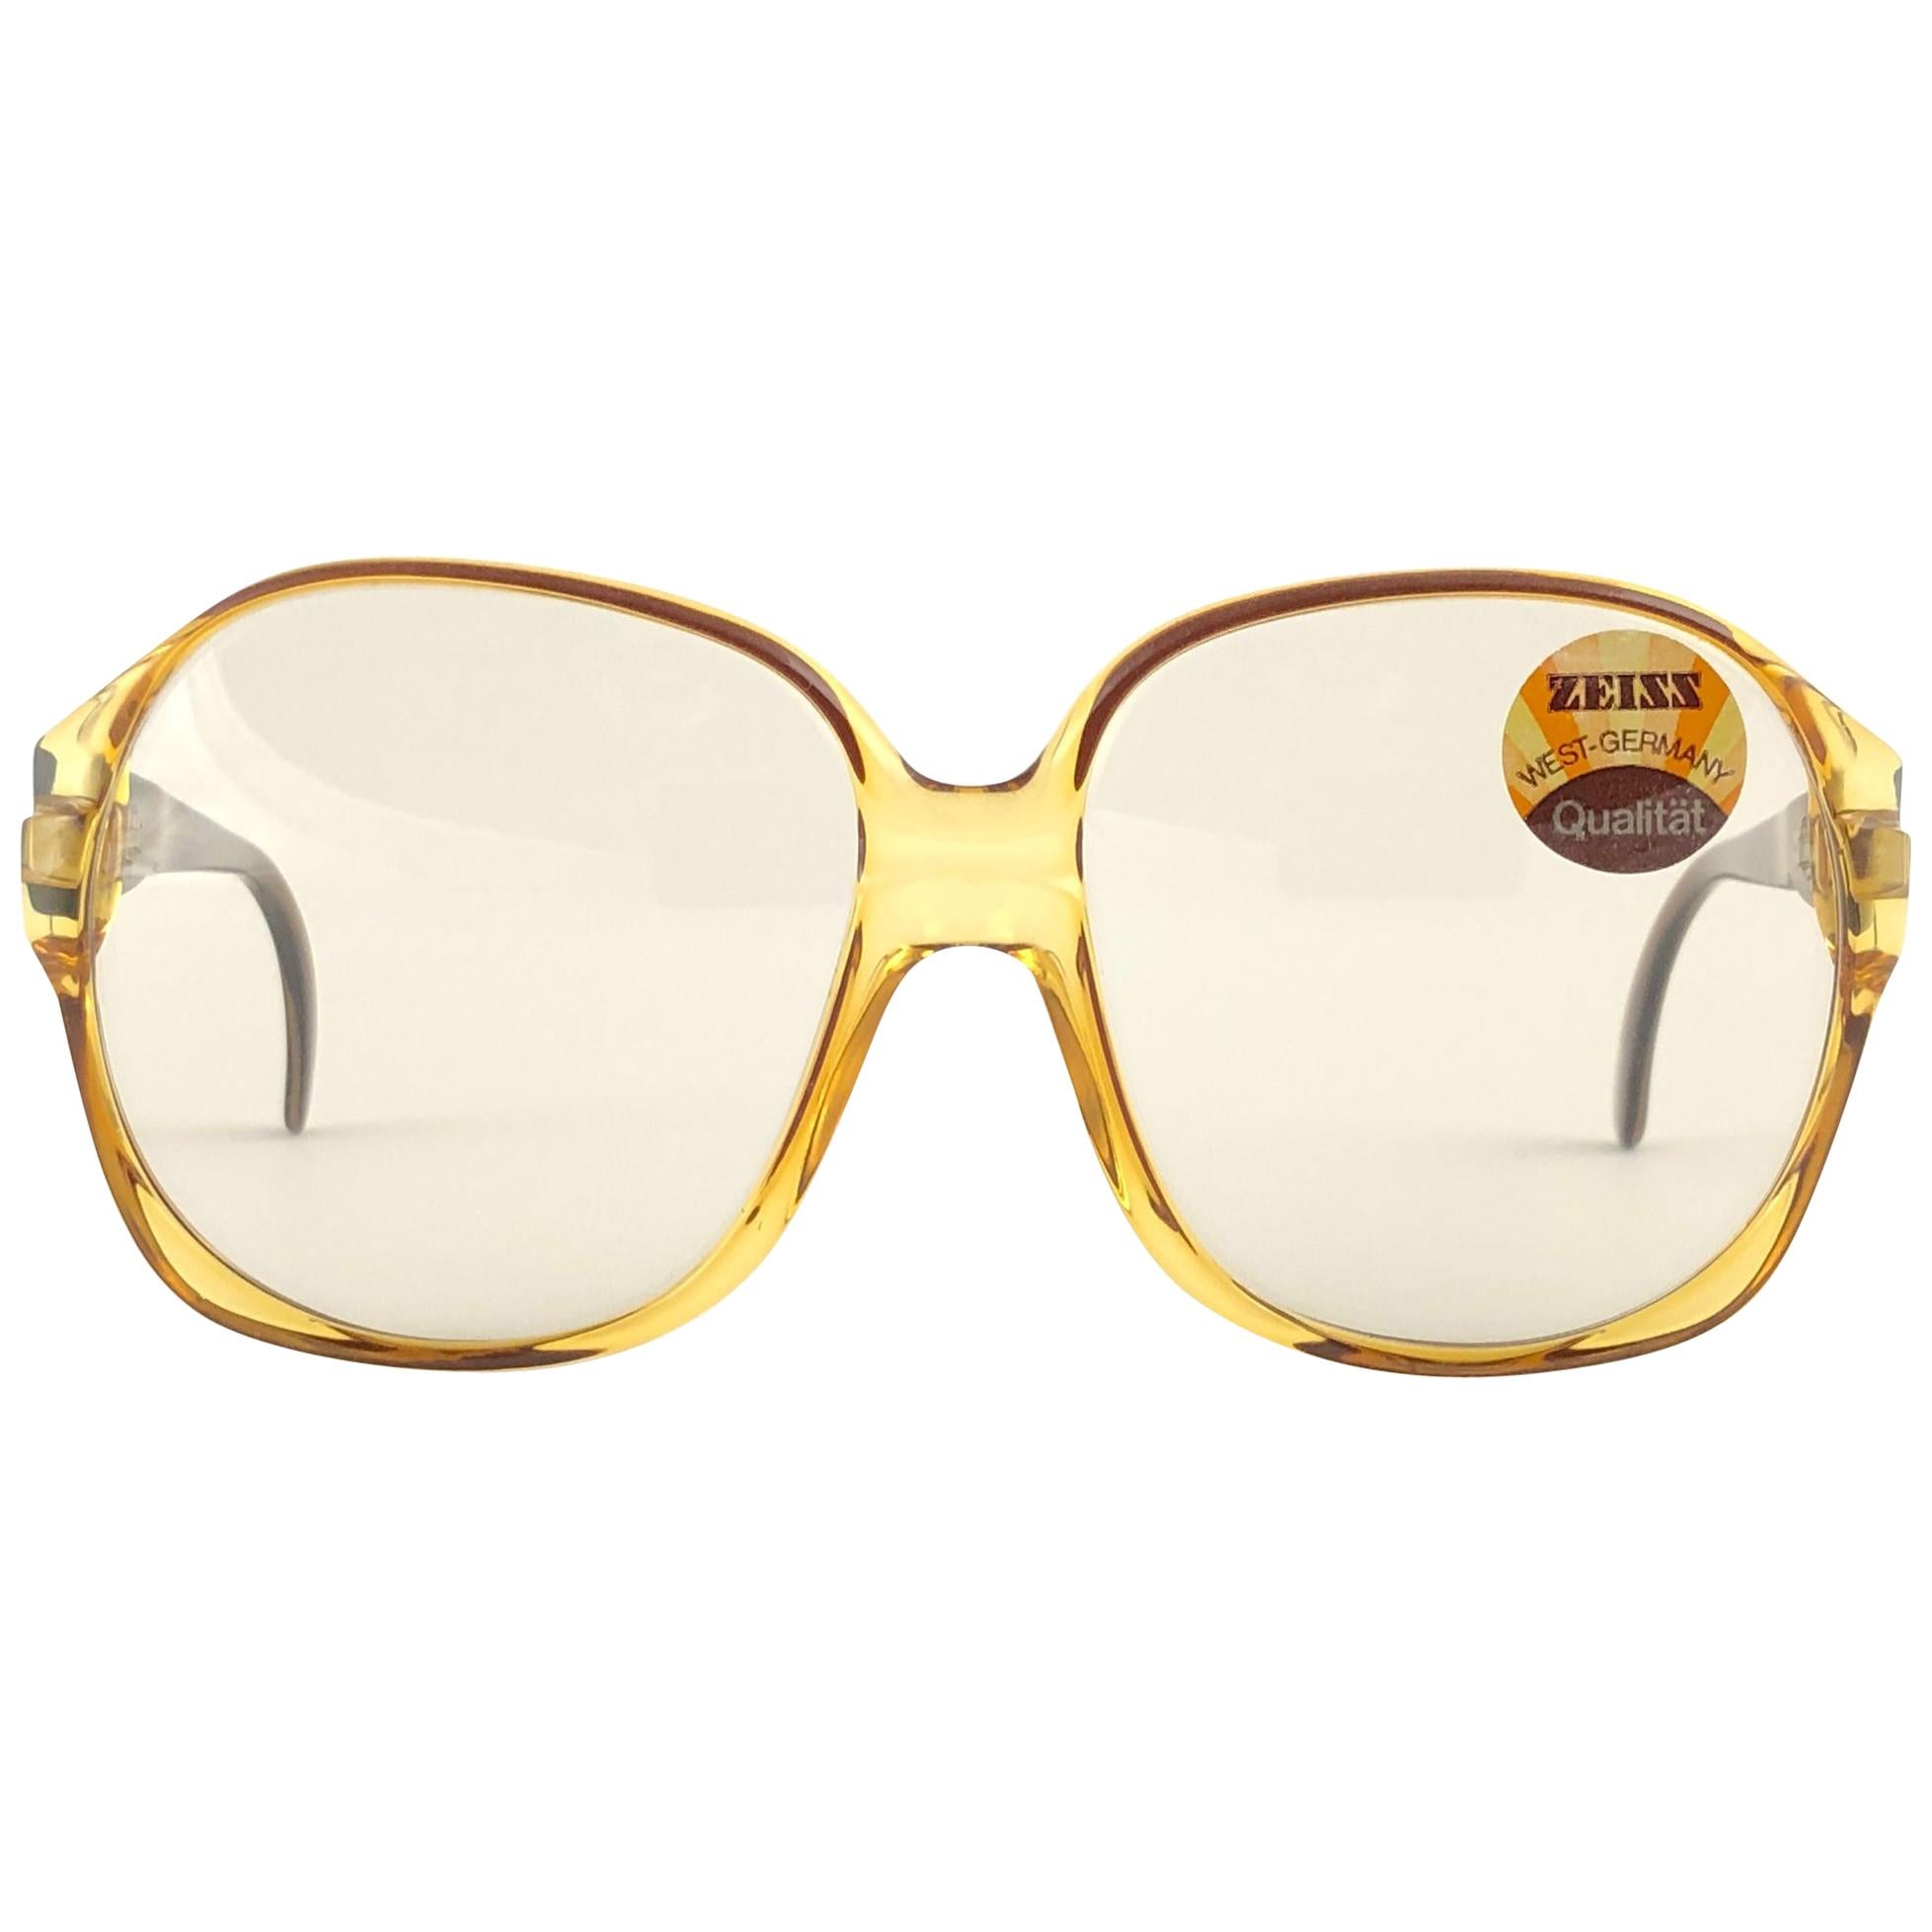 Zeiss lunettes de soleil vintage neuves en ambre translucide, fabriquées en Allemagne, années 8068 en vente